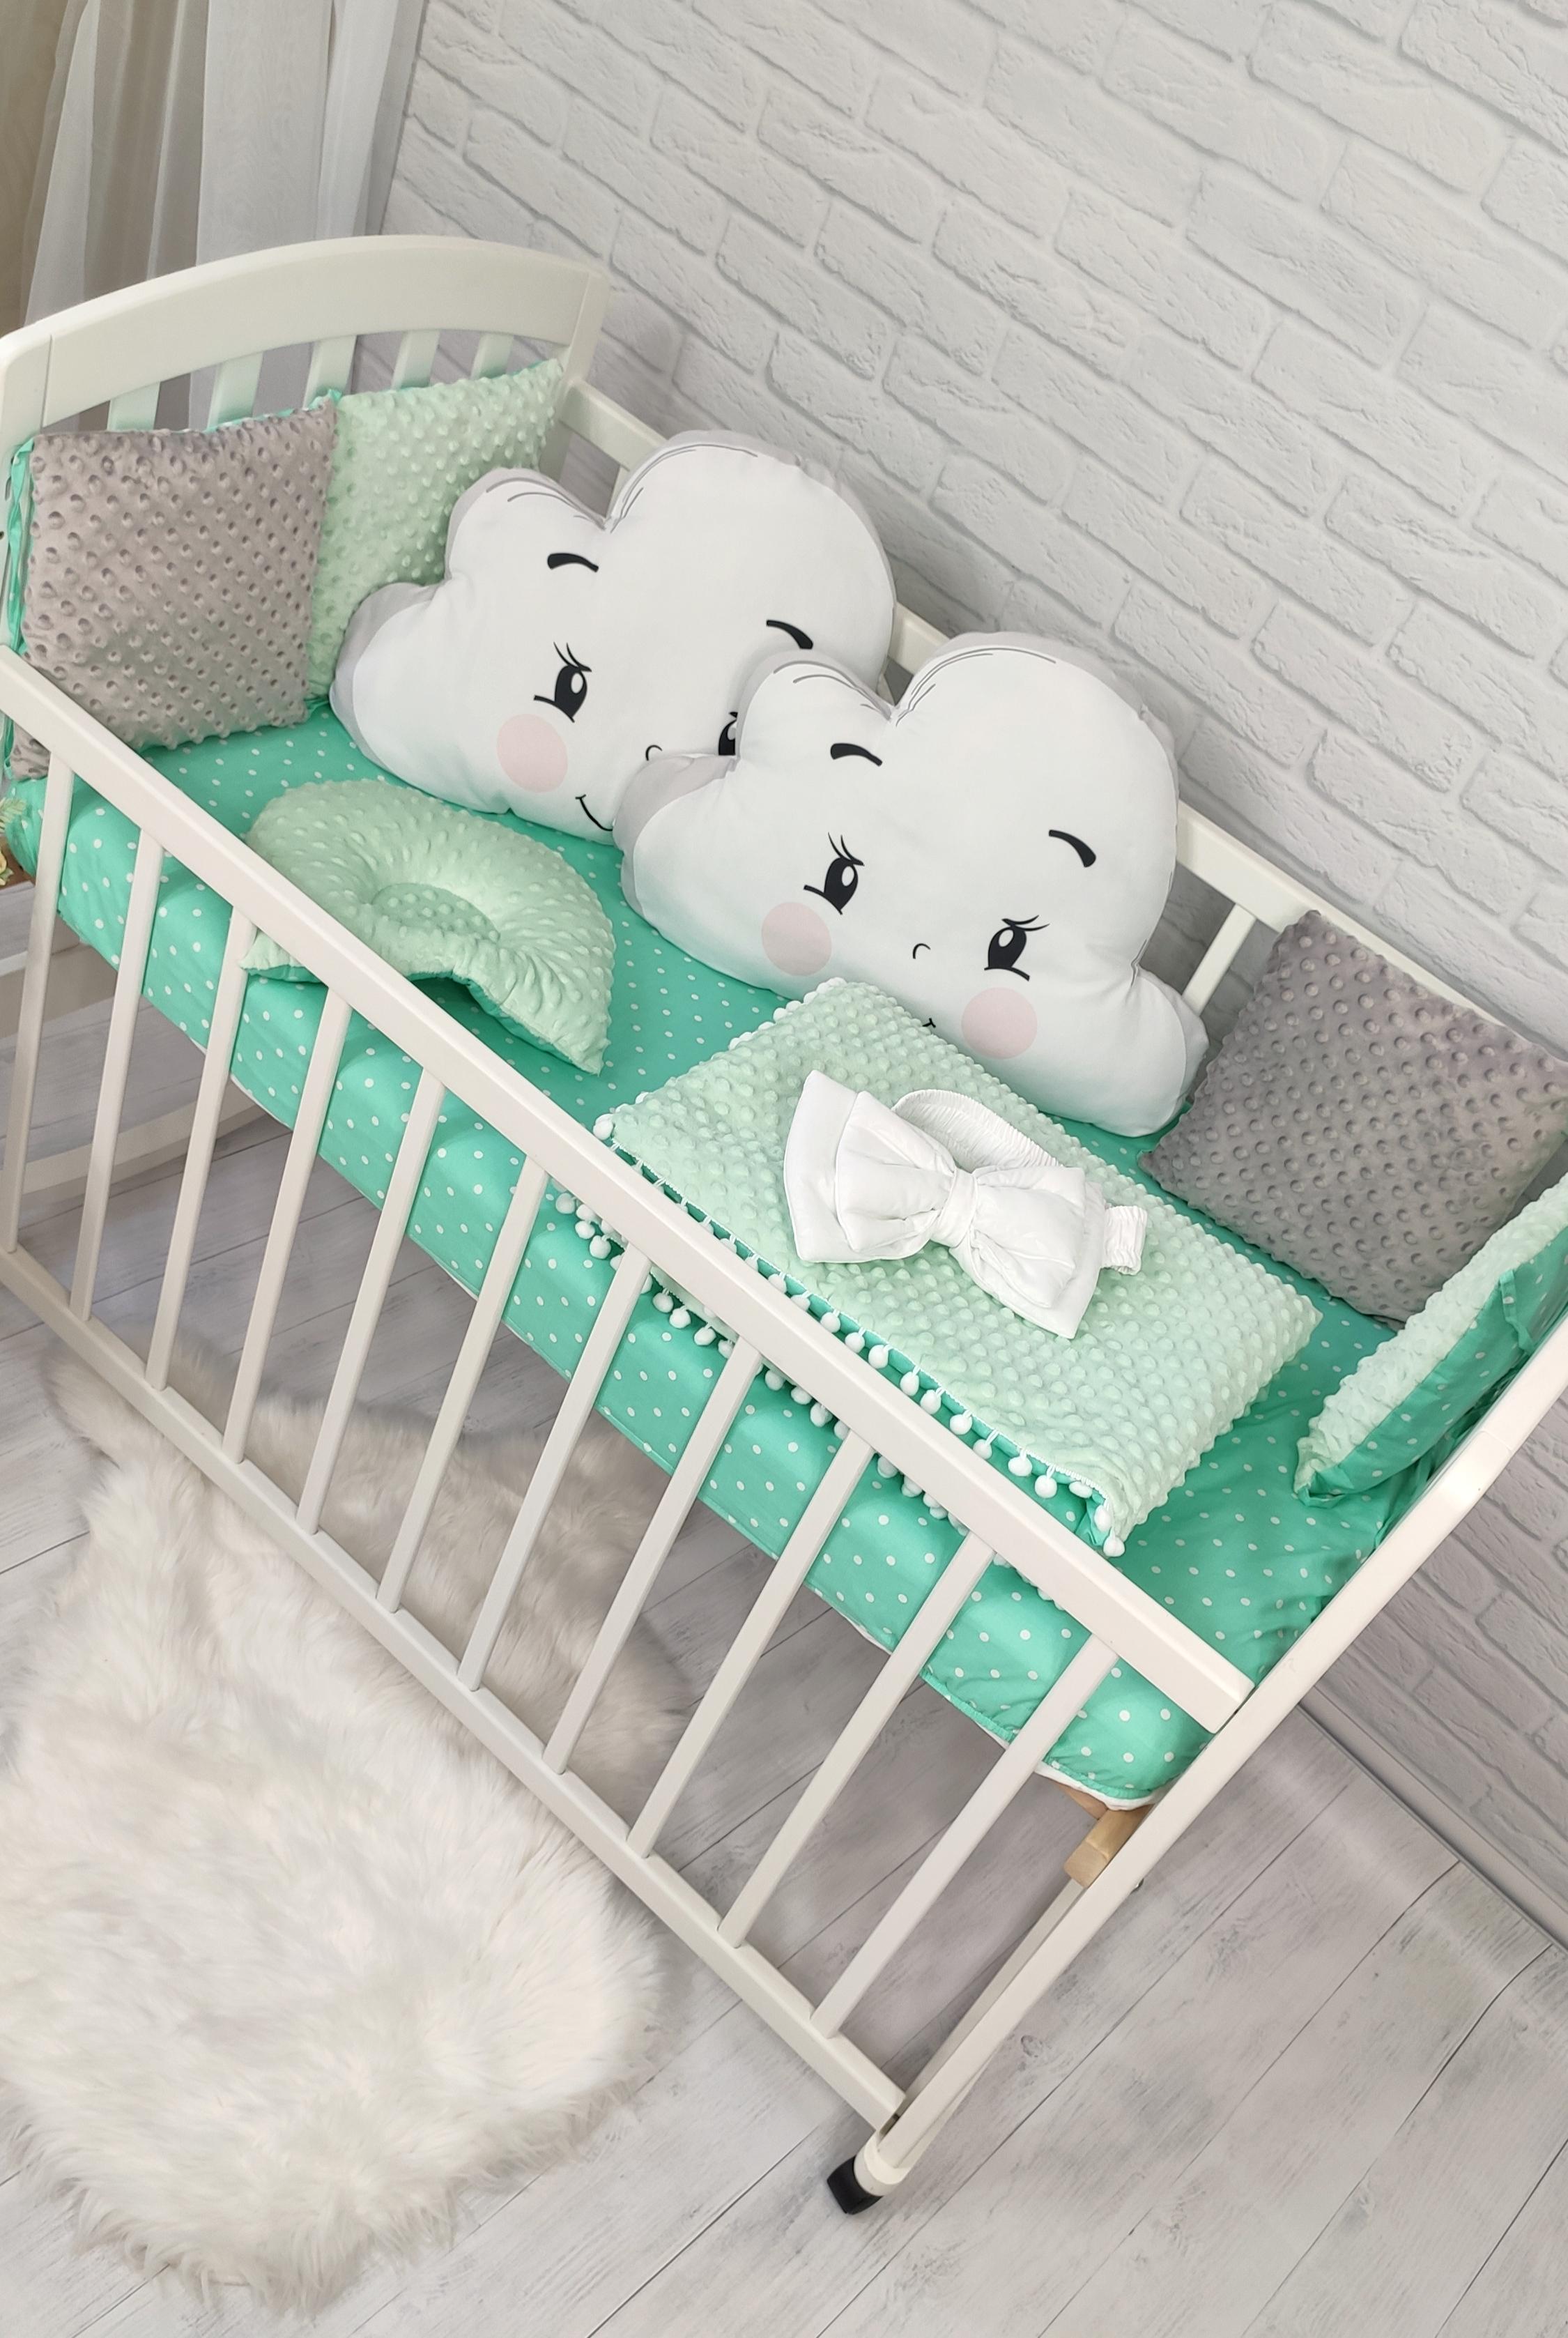 Купить постельные принадлежности для новорожденных в интернет магазине zenin-vladimir.ru